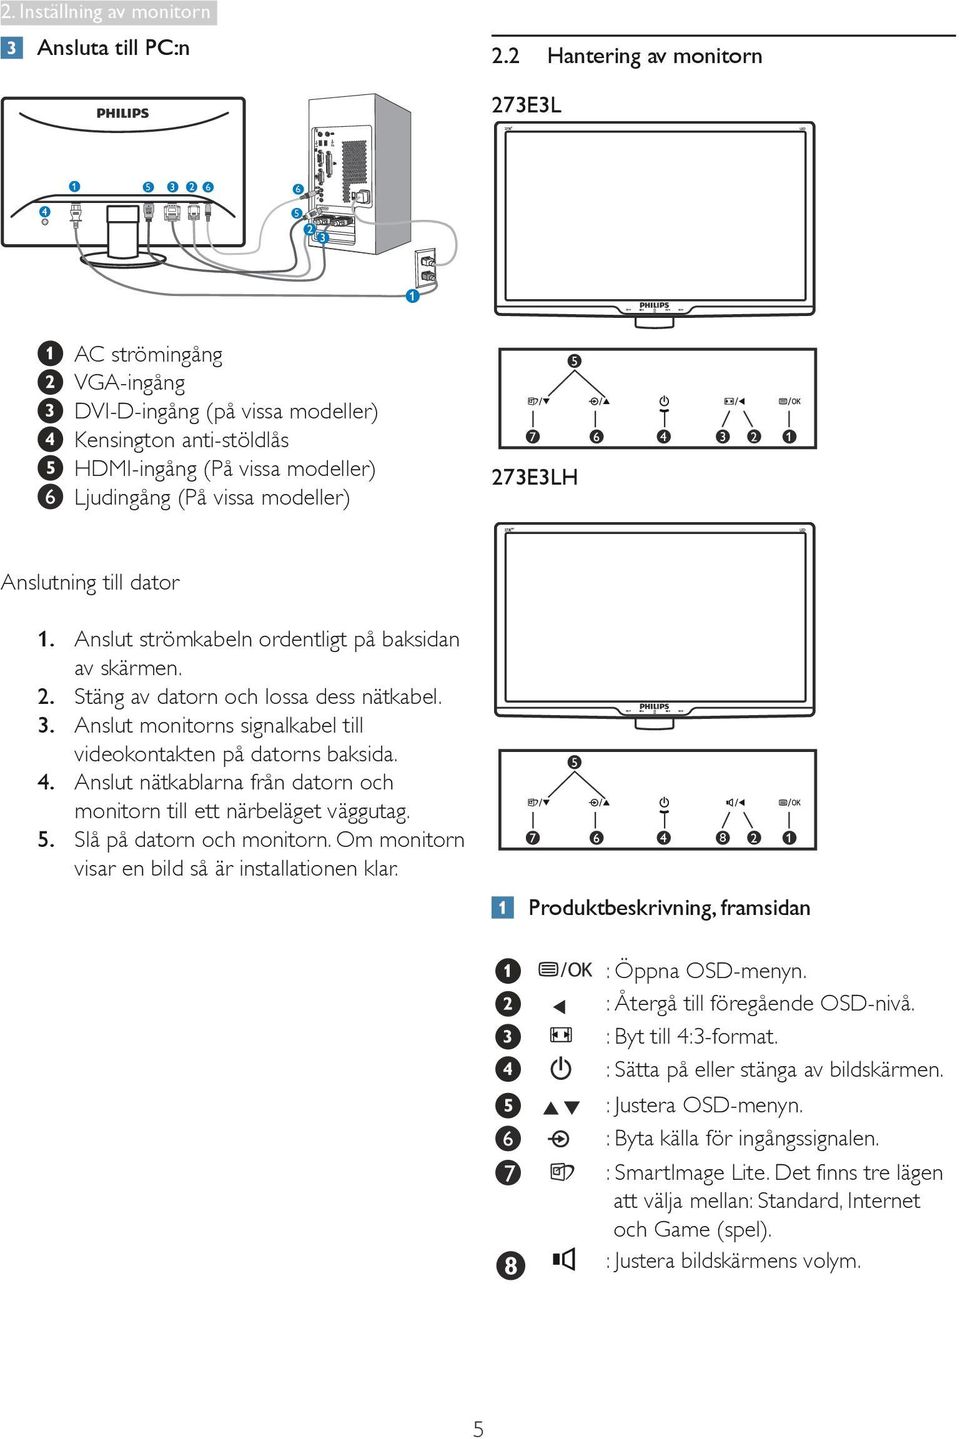 Anslutning till dator 1. Anslut strömkabeln ordentligt på baksidan av skärmen. 2. Stäng av datorn och lossa dess nätkabel. 3. Anslut monitorns signalkabel till videokontakten på datorns baksida. 4.